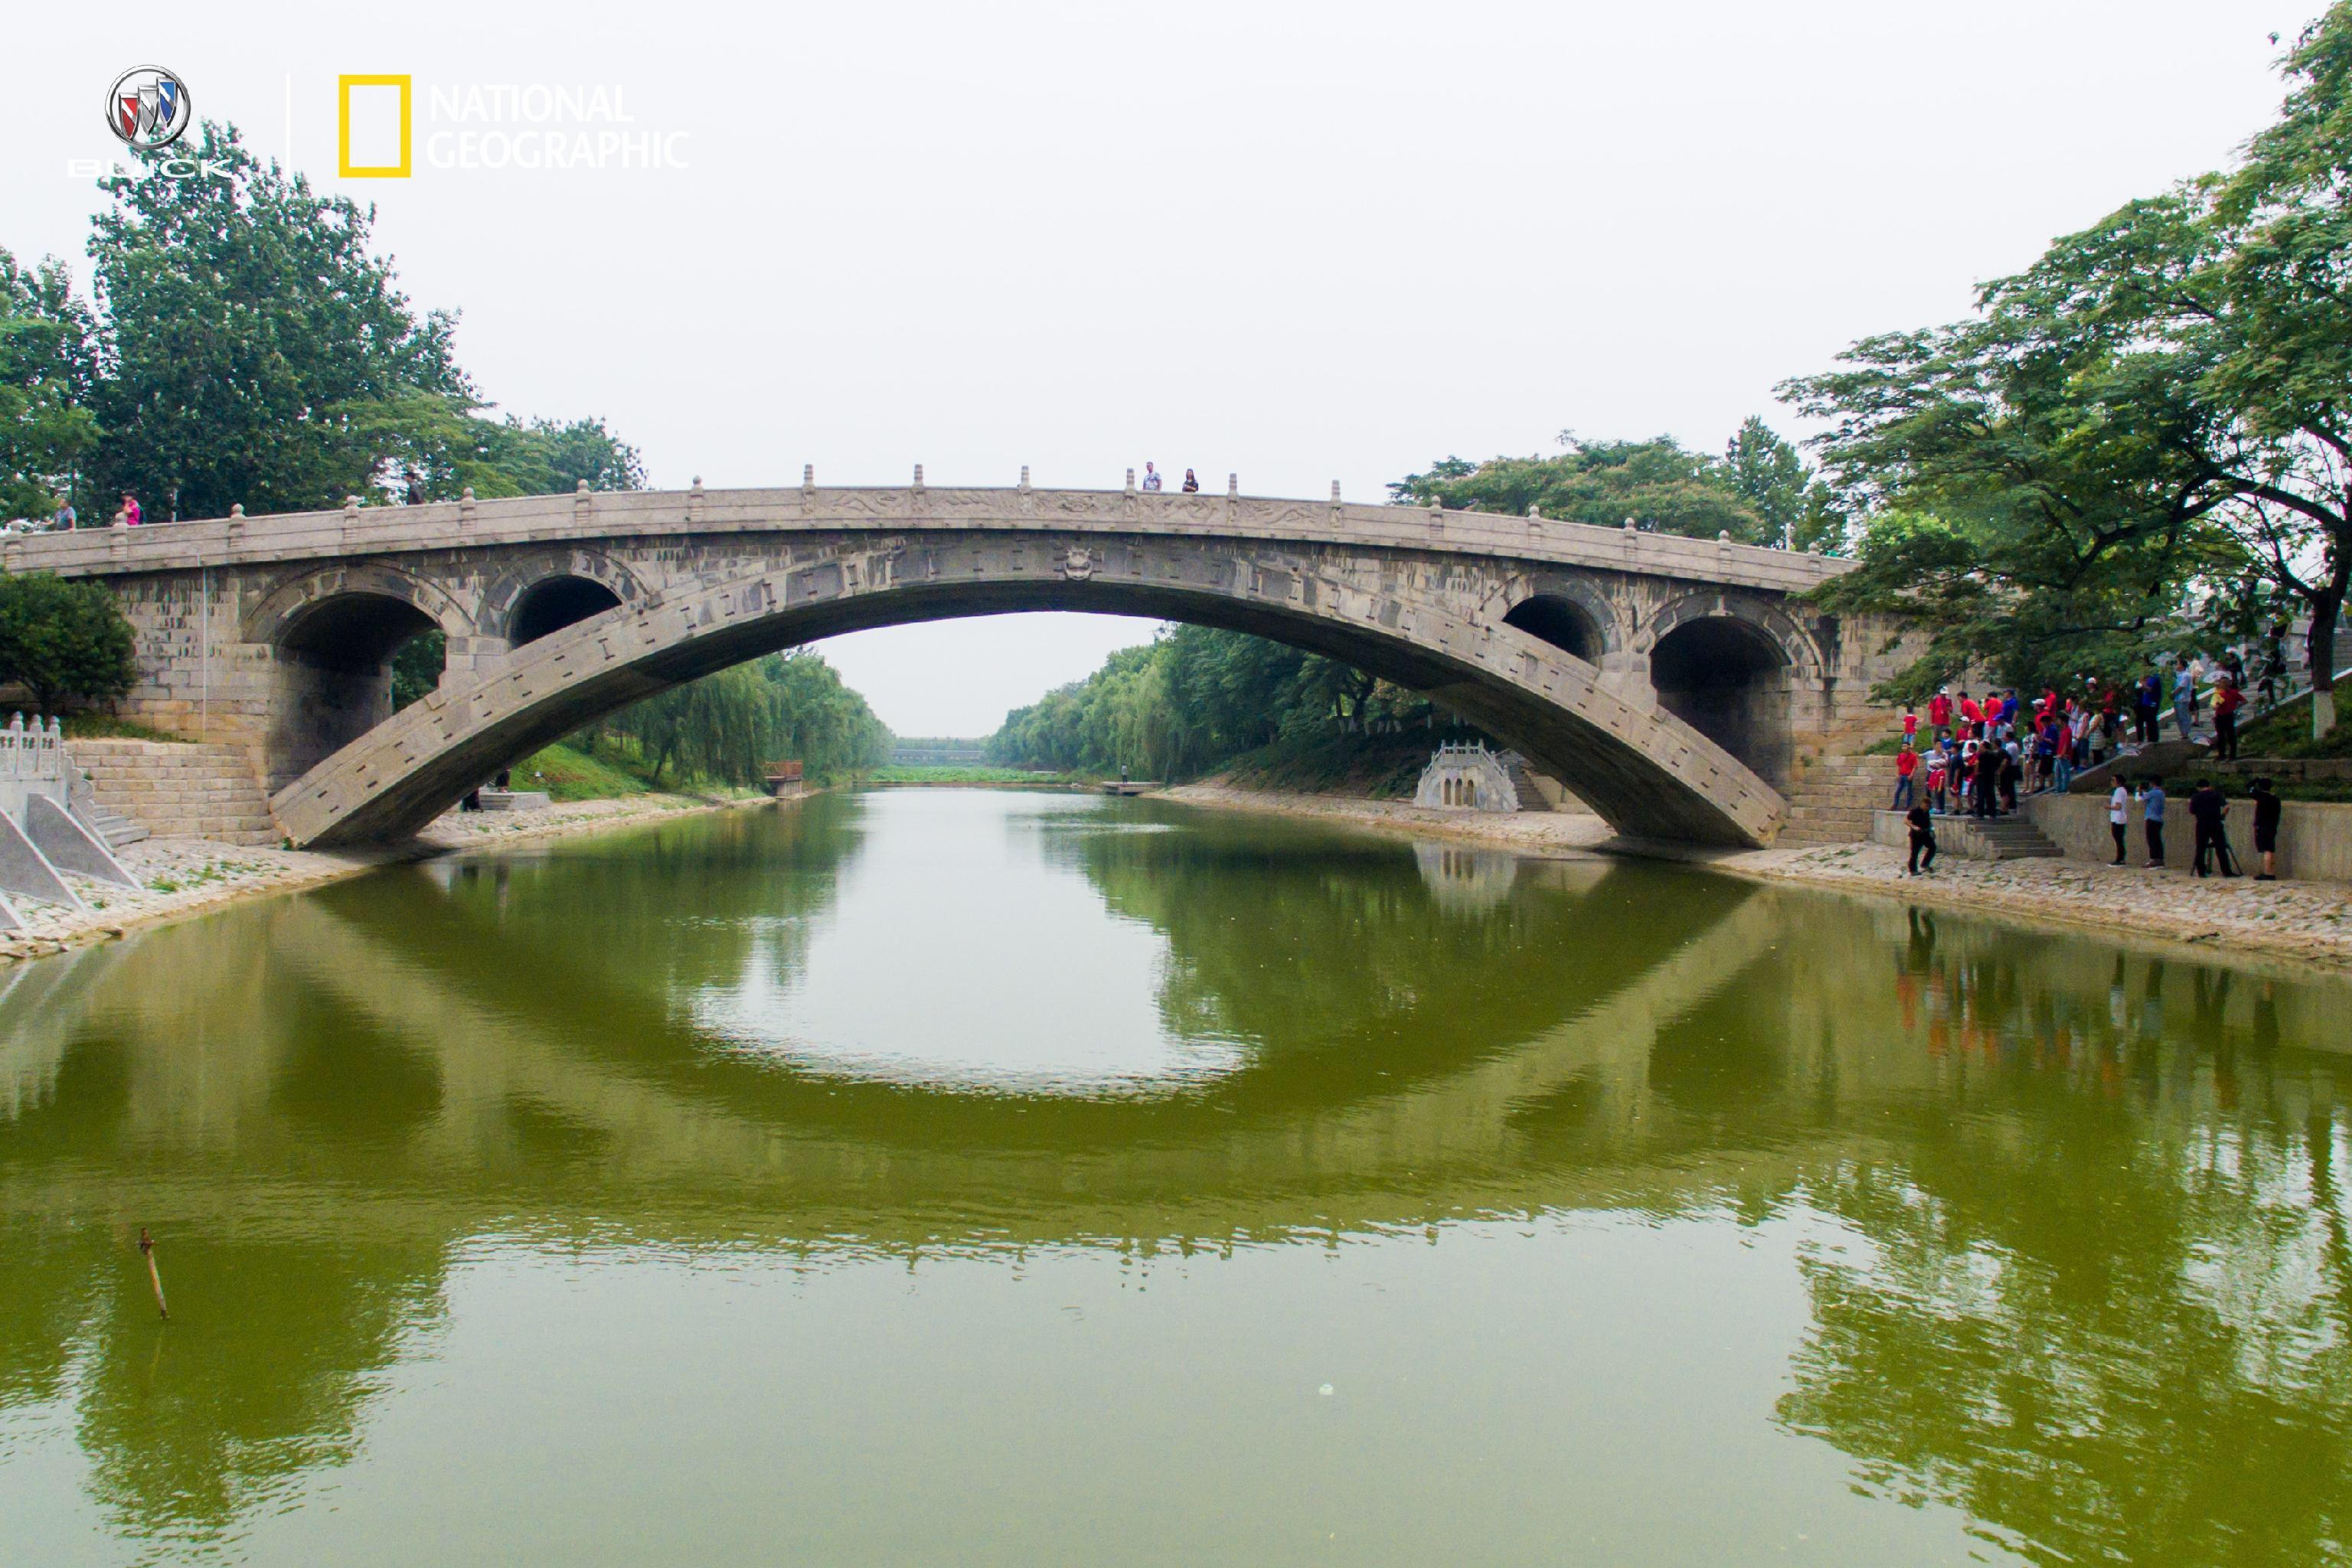 赵州桥2017年的寰行中国,以桥为目的地,先后抵达卢沟桥,赵州桥,锣鼓